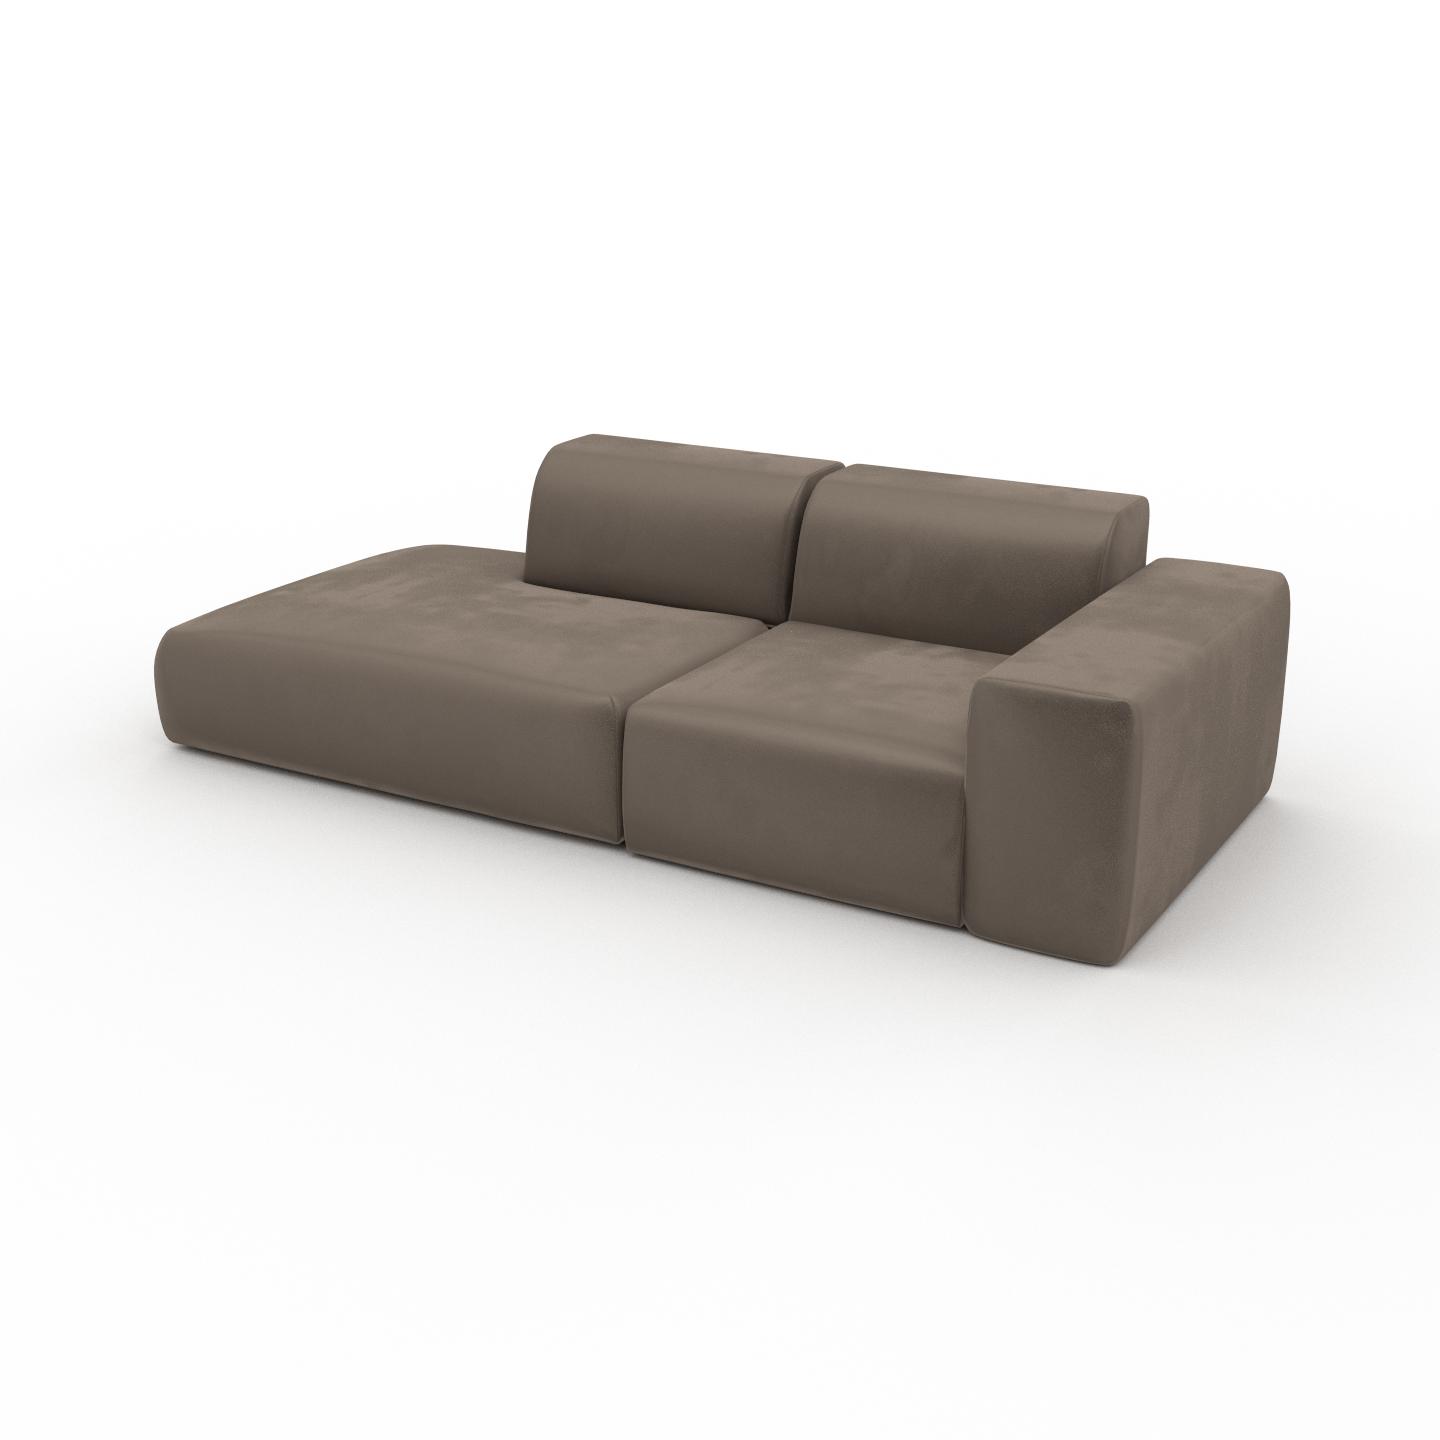 MYCS Sofa Samt Cremebeige - Moderne Designer-Couch: Hochwertige Qualität, einzigartiges Design - 243 x 72 x 107 cm, Komplett anpassbar